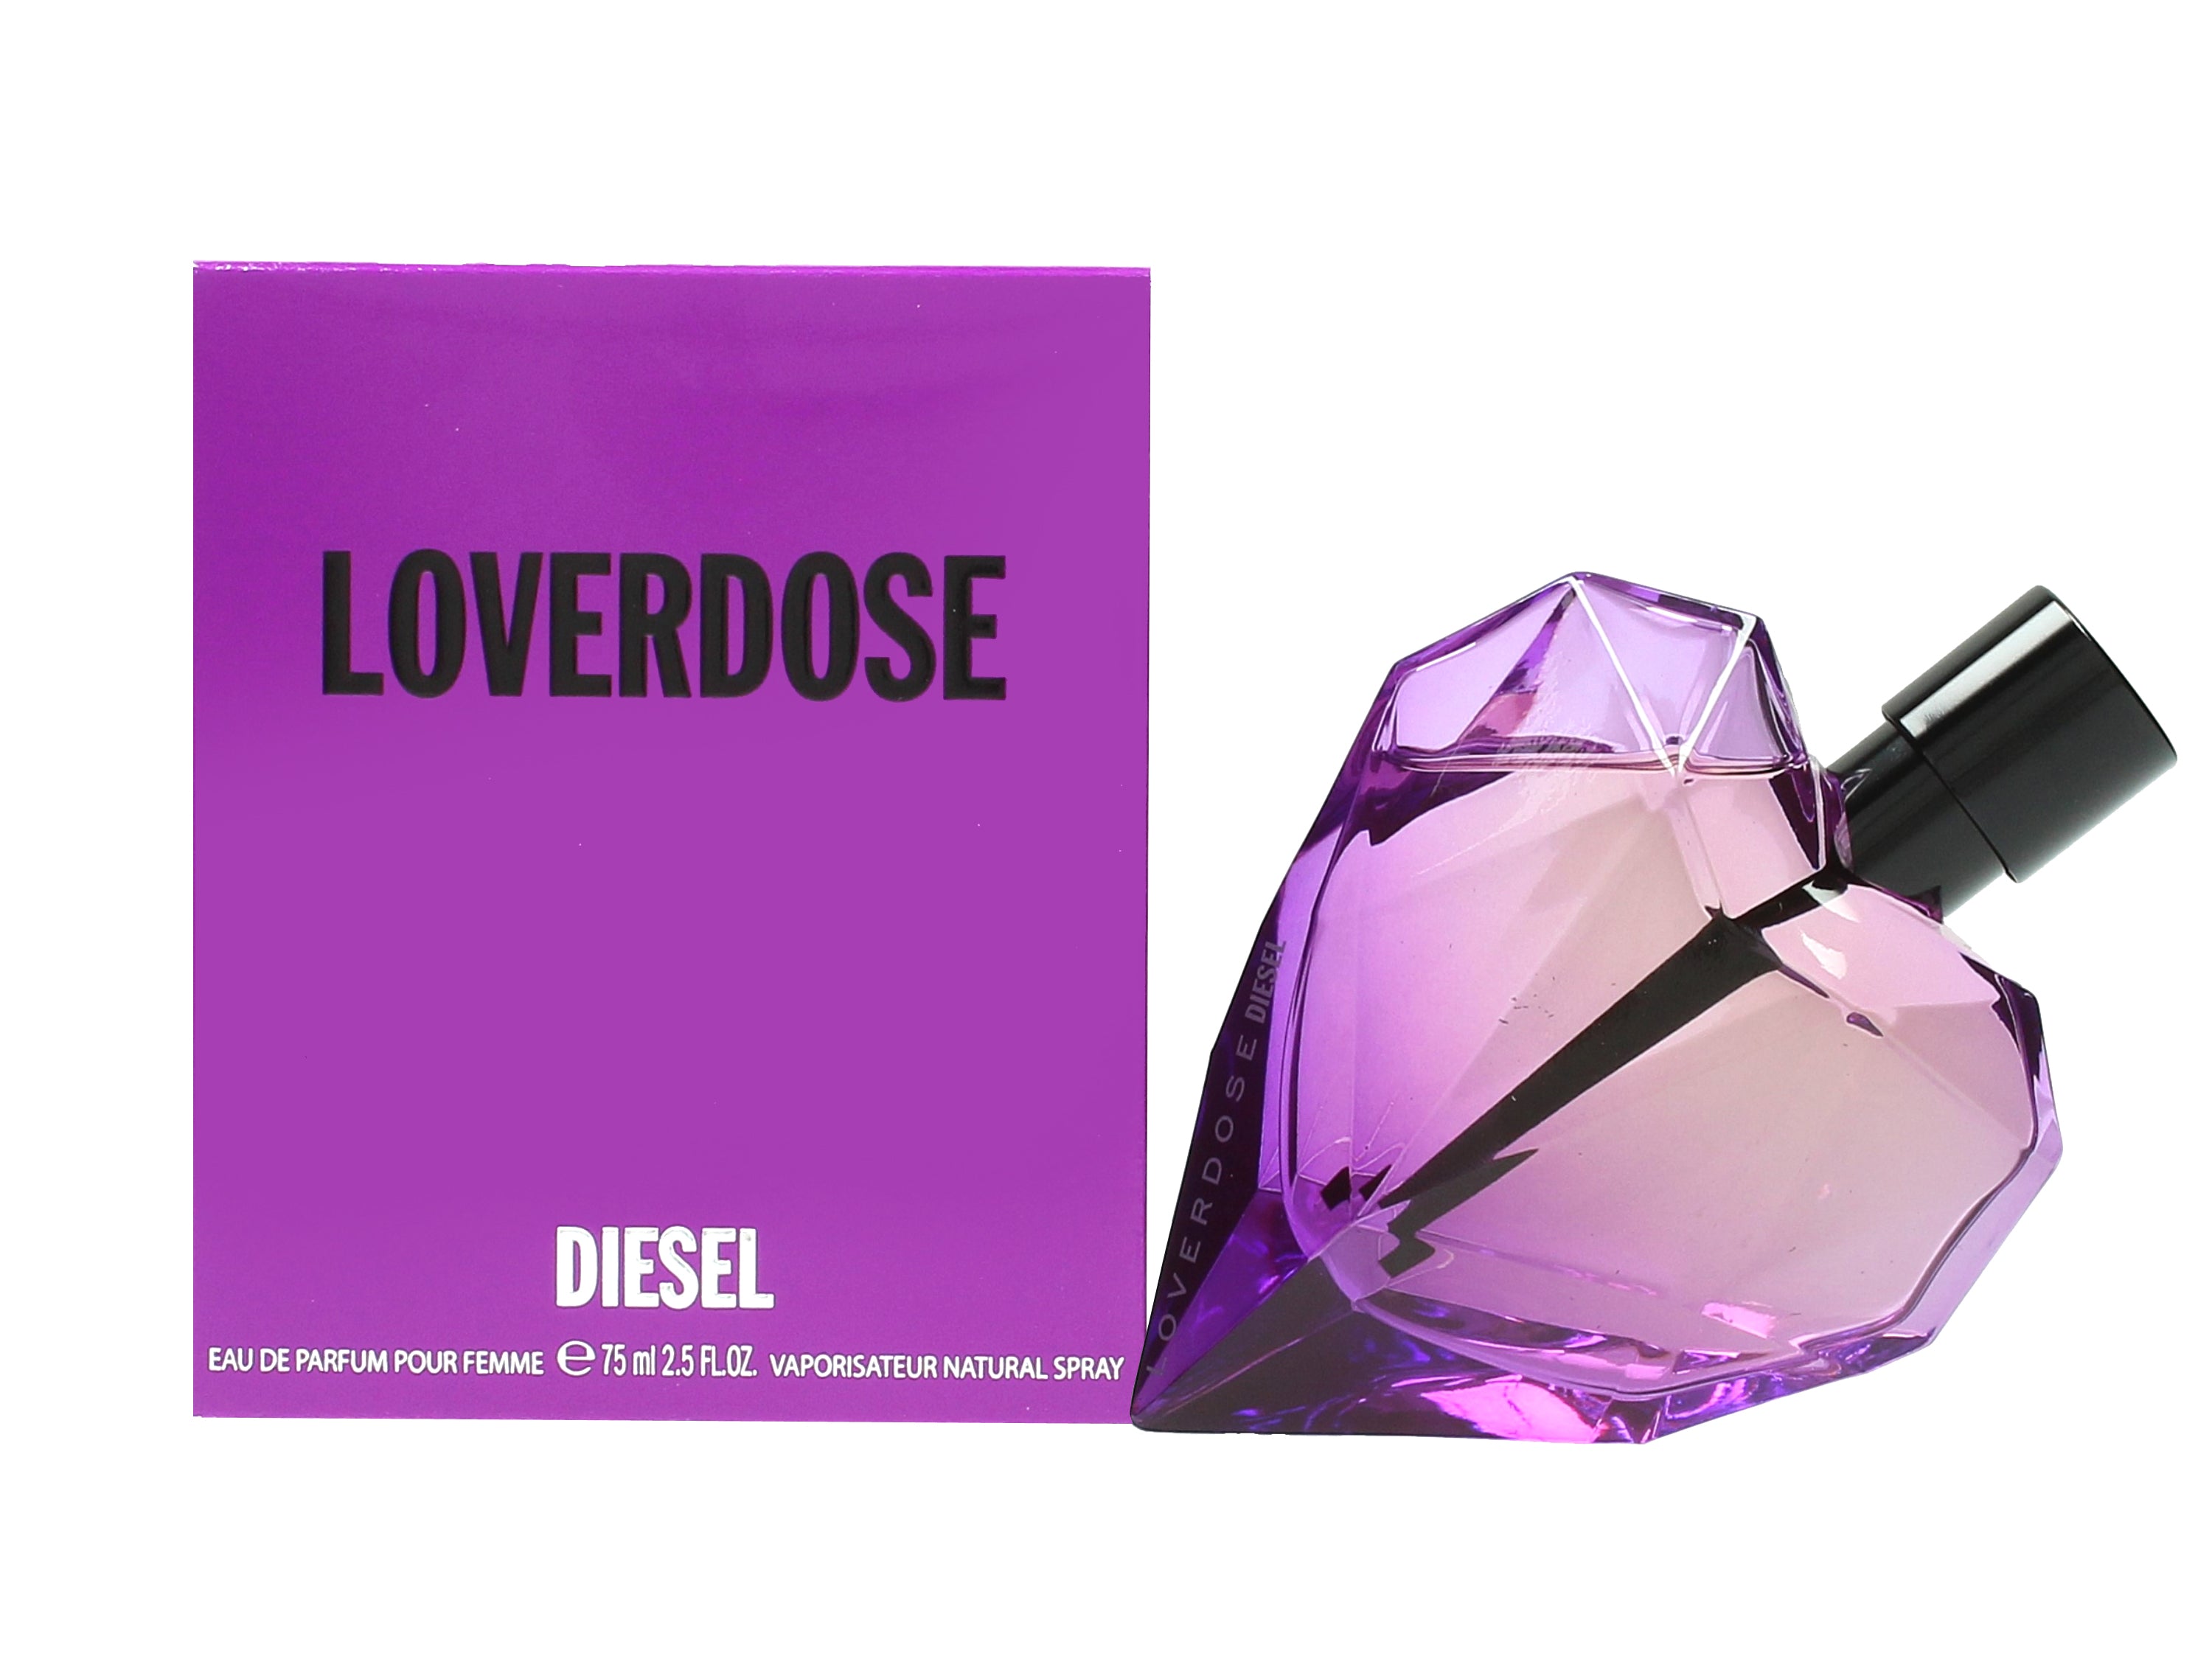 View Diesel Loverdose Eau de Parfum 75ml Spray information